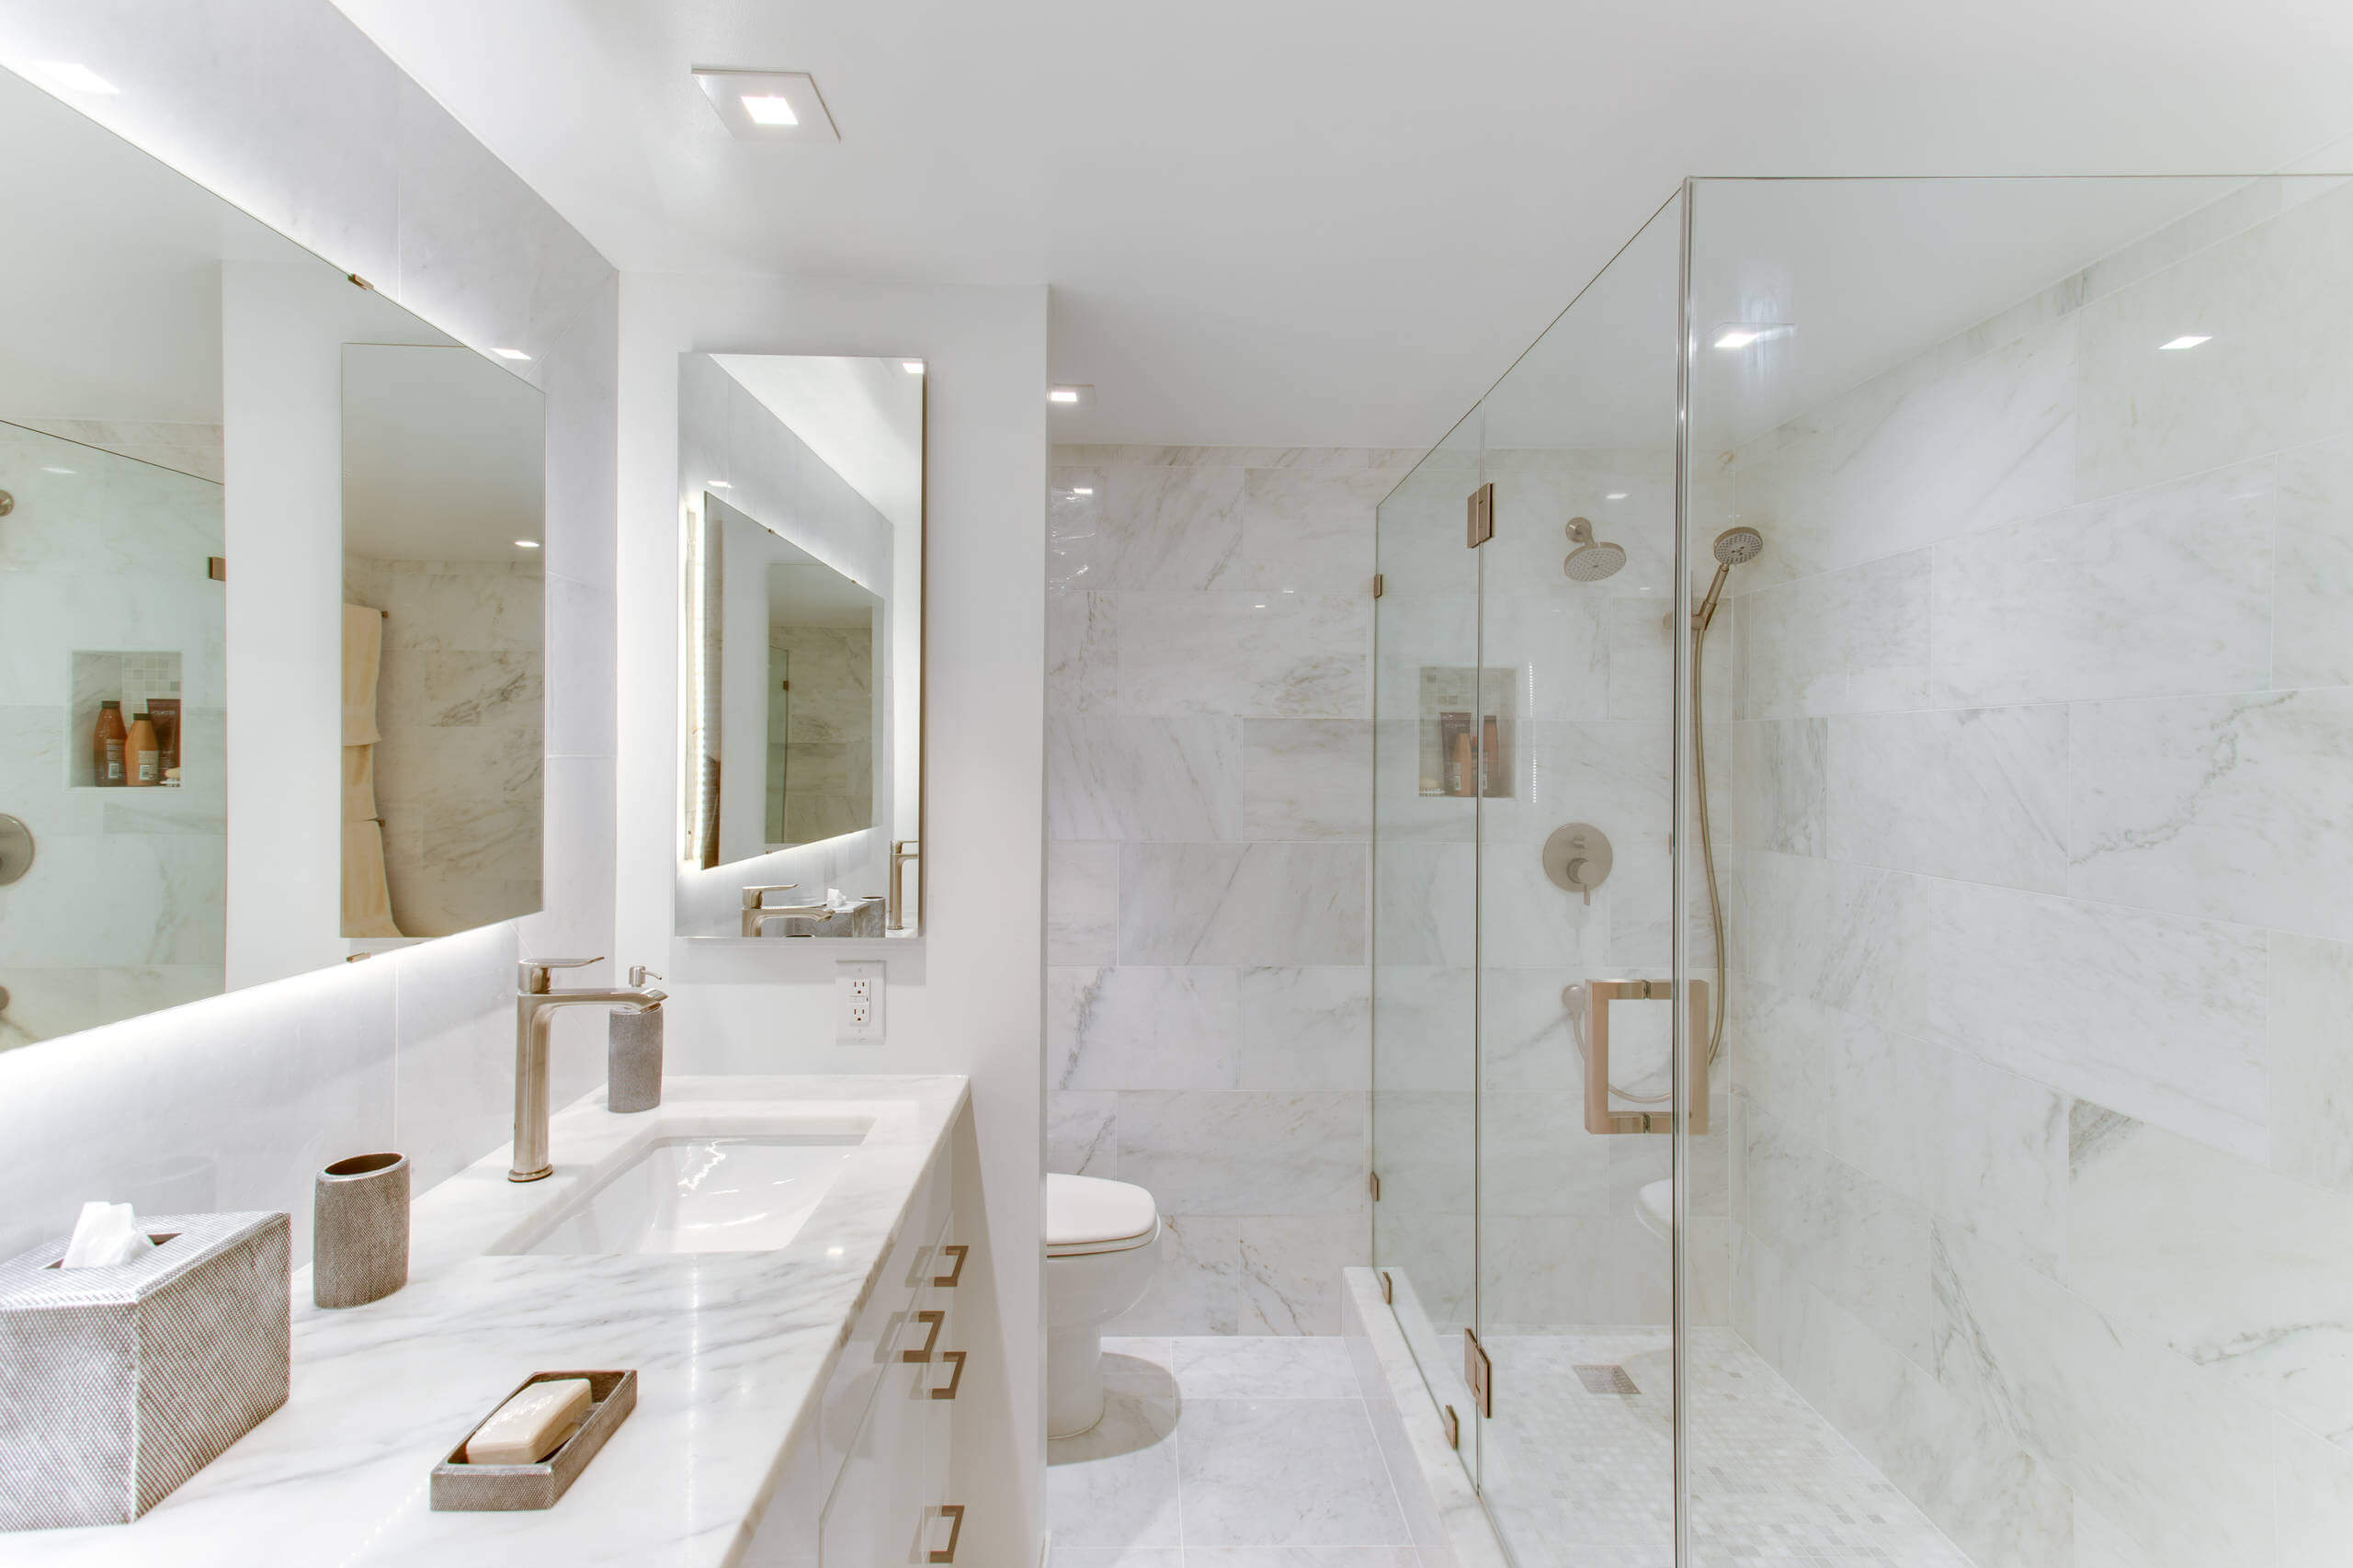 12 contemporary bathroom faucet designs